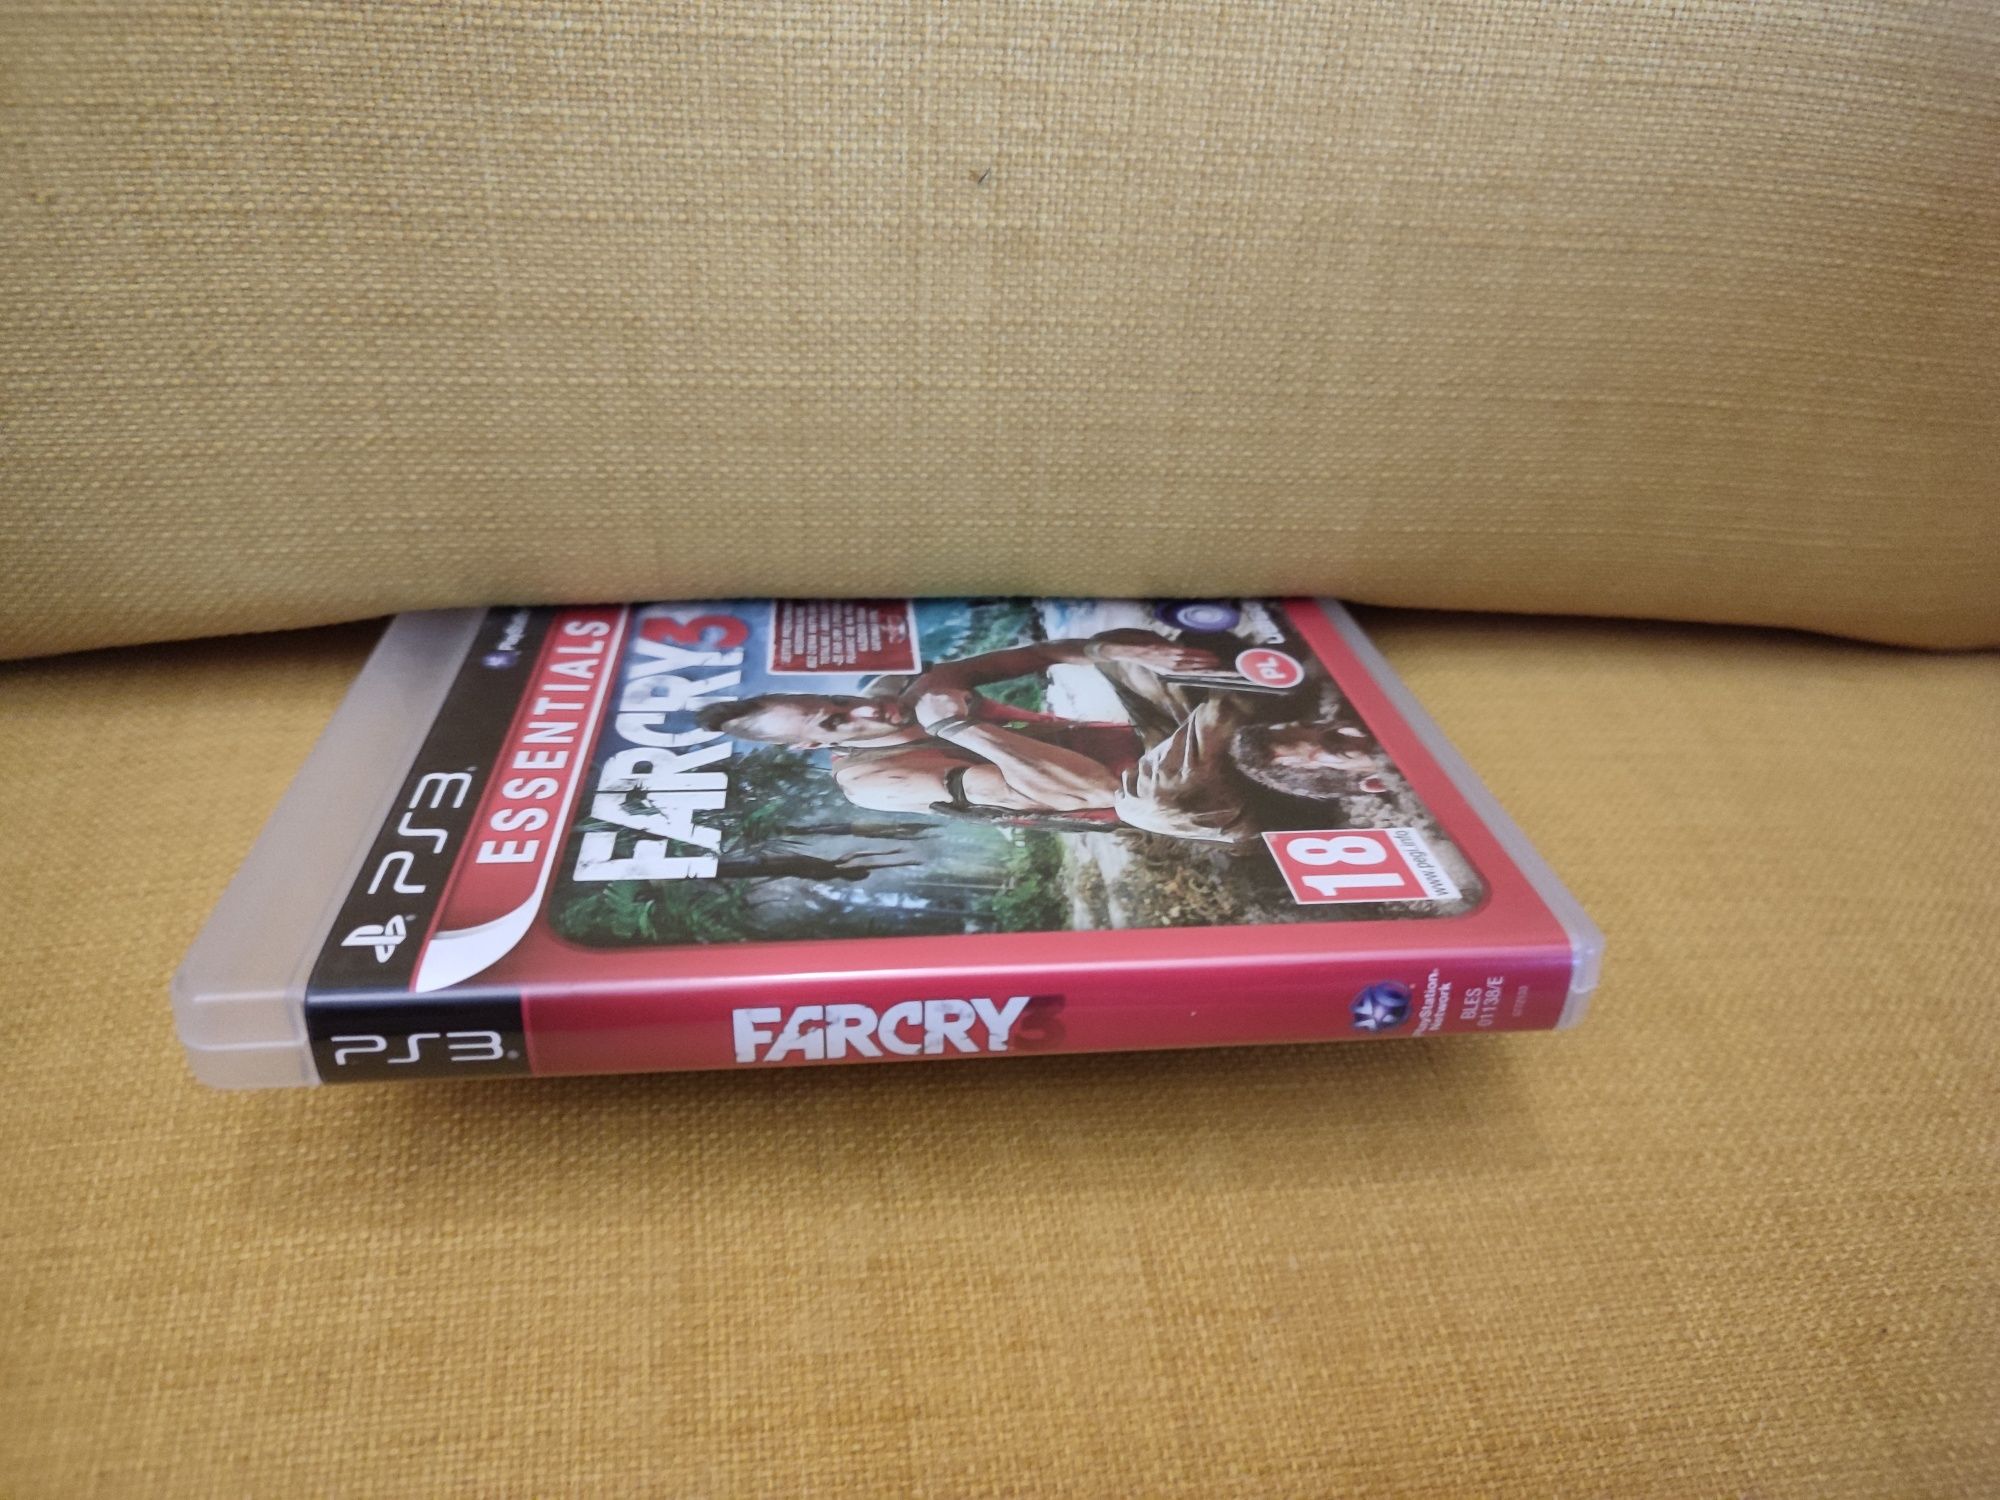 Gra Farcry 3 essential na Sony PlayStation 3